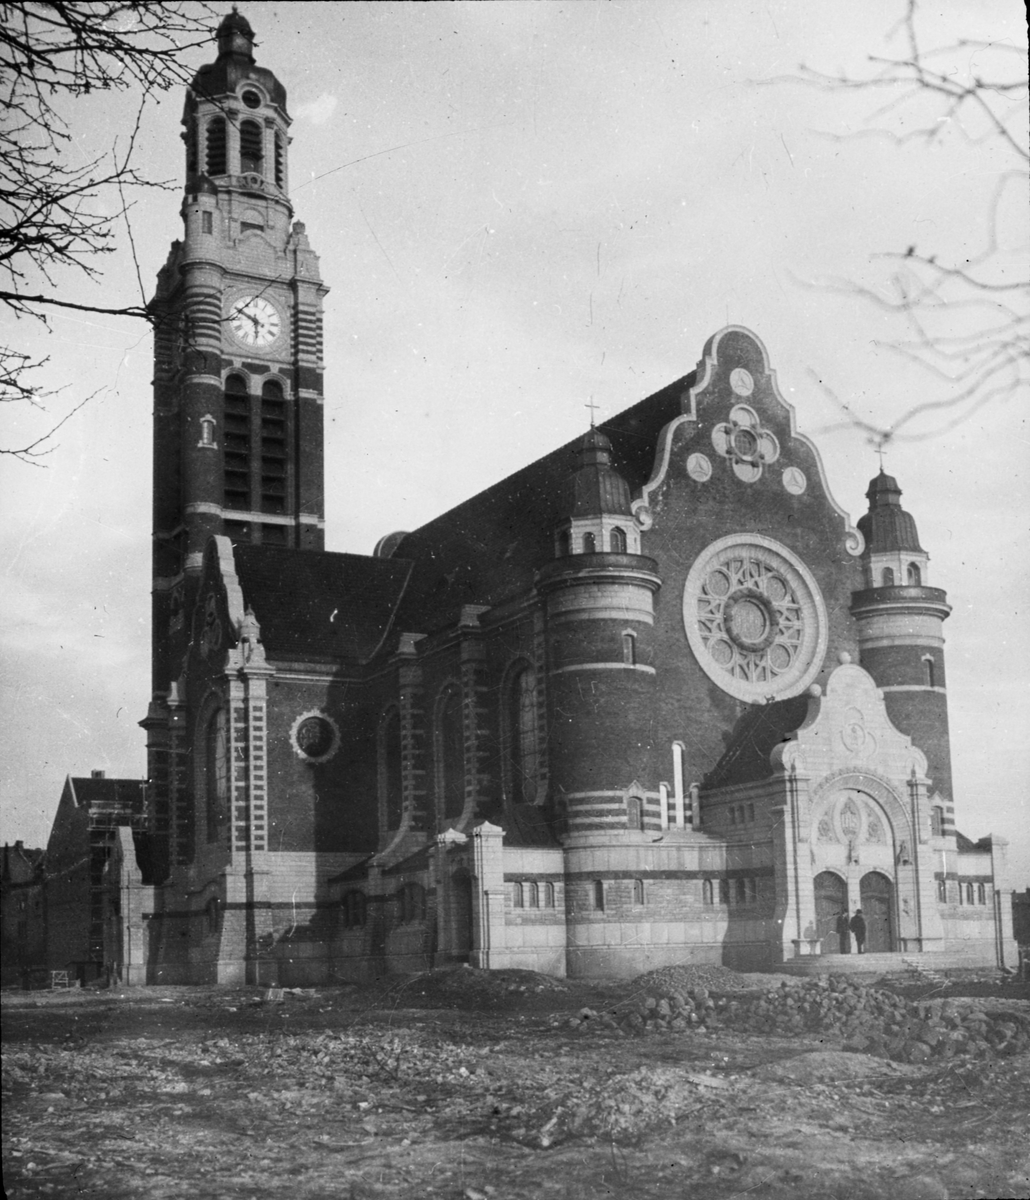 Skioptikonbild med motiv av Sankt Johannes kyrka, Malmö.
Bilden har förvarats i kartong märkt: 1908. Helsingborg 3. Kullen 1. Lund 1. Malmö 2.